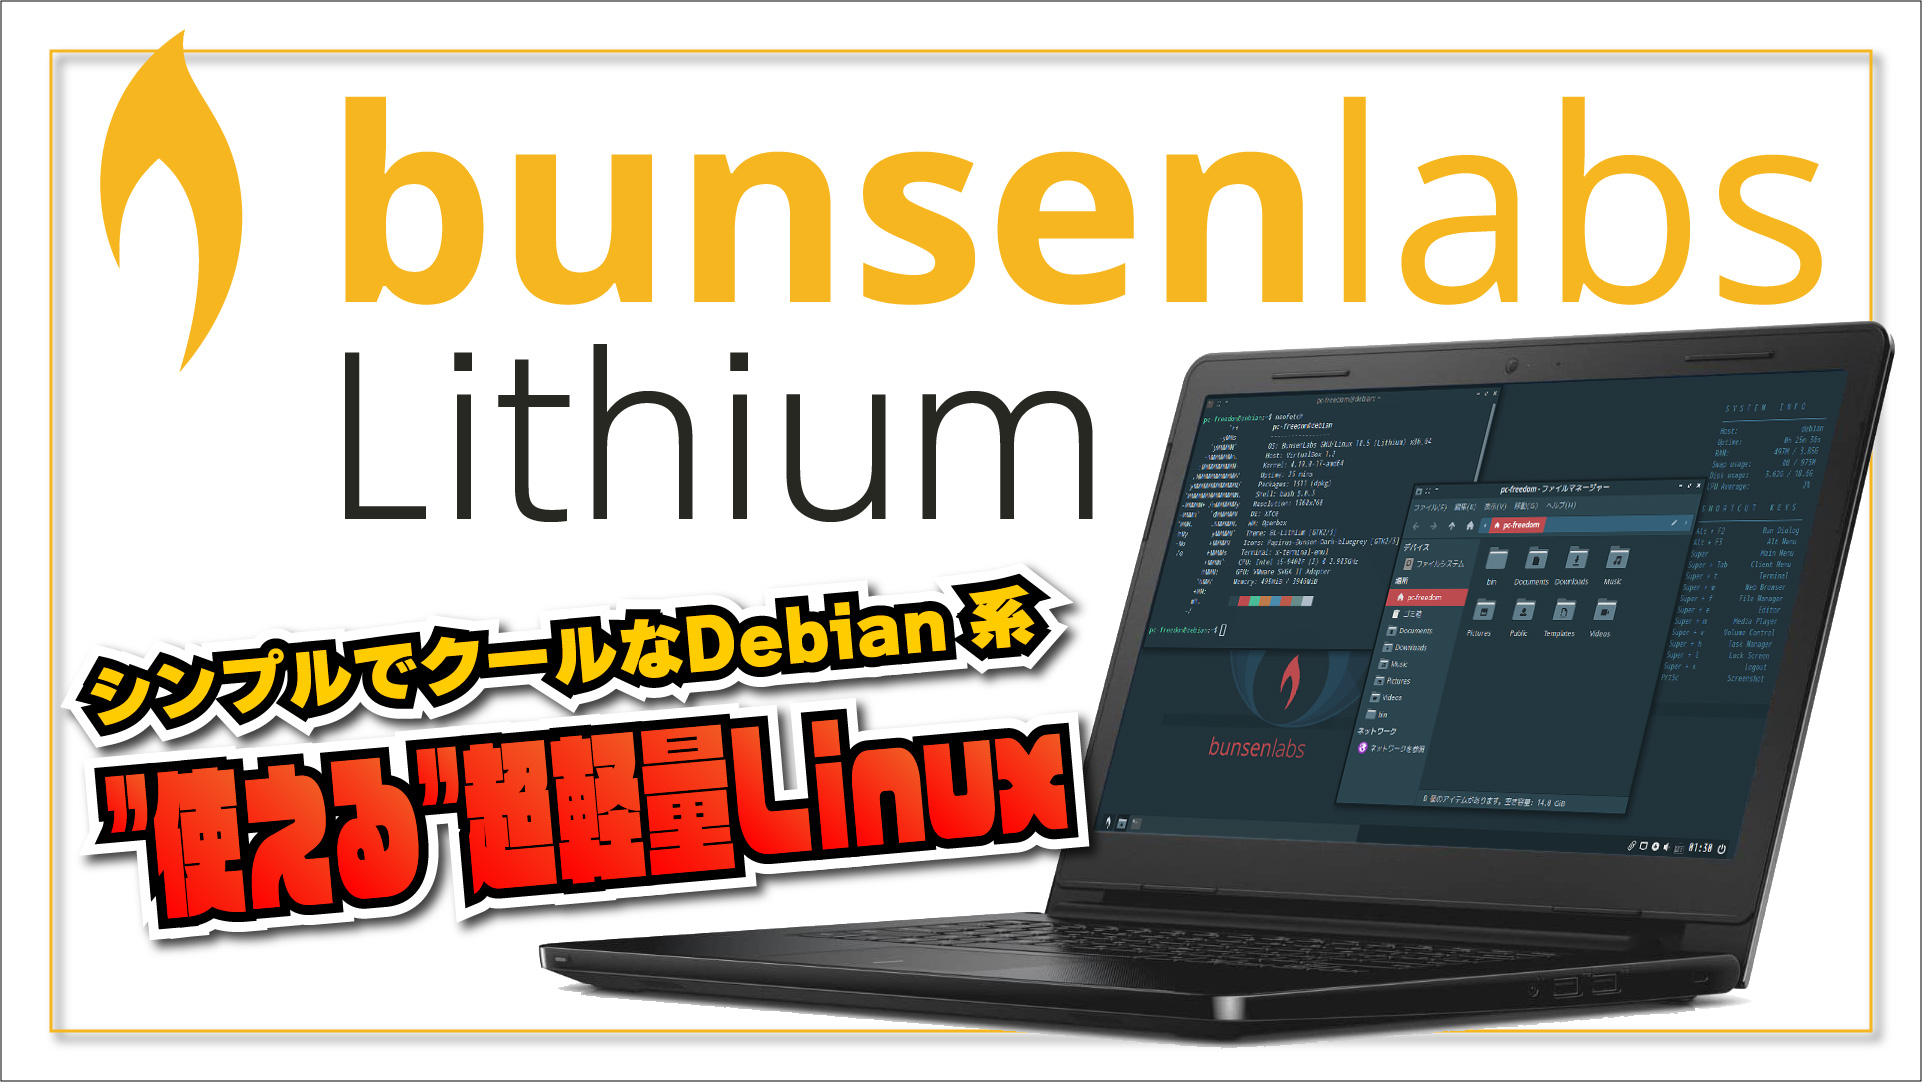 【使える超軽量 Linux】bunsenlabs lithium - シンプルでクールな Debian 系ディストリビューション